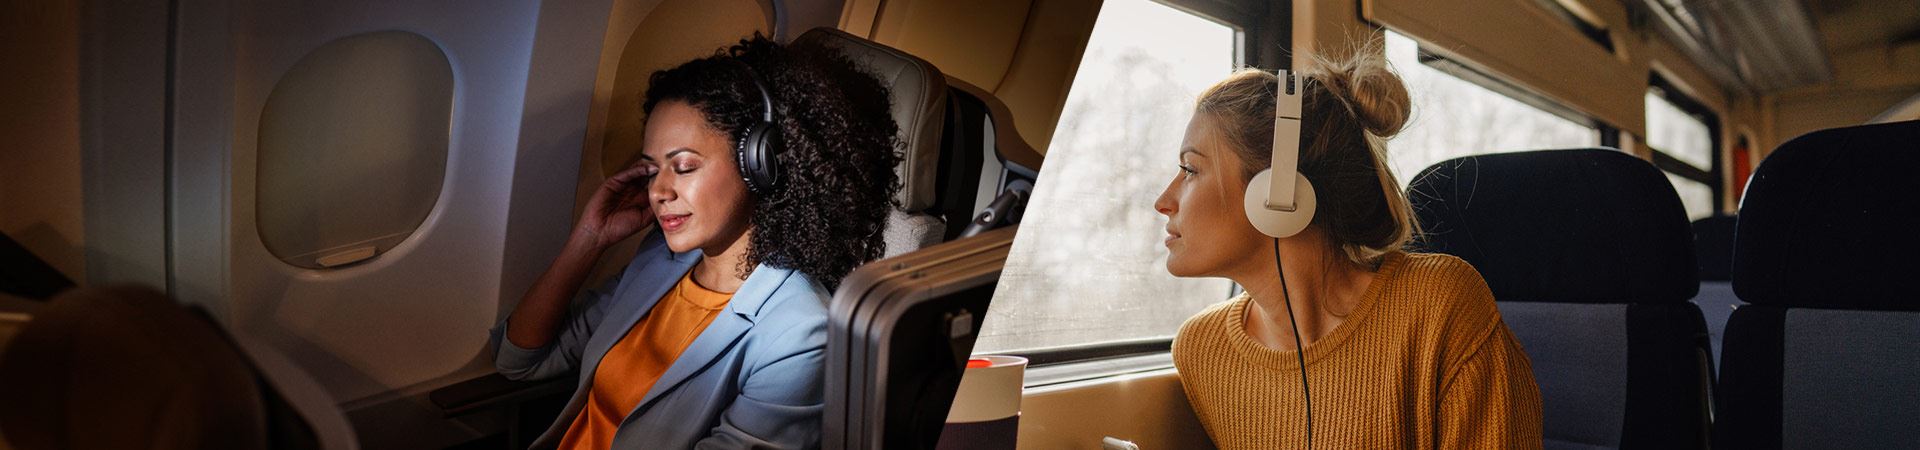 À gauche, une photographie d’une femme assise confortablement à l’intérieur d’un avion. À droite, une photographie d'une autre femme assise à l'intérieur d'un train, regardant par la fenêtre.  Les deux utilisent des écouteurs. L’atmosphère dans l’avion et dans le train est calme, sans personne visible.